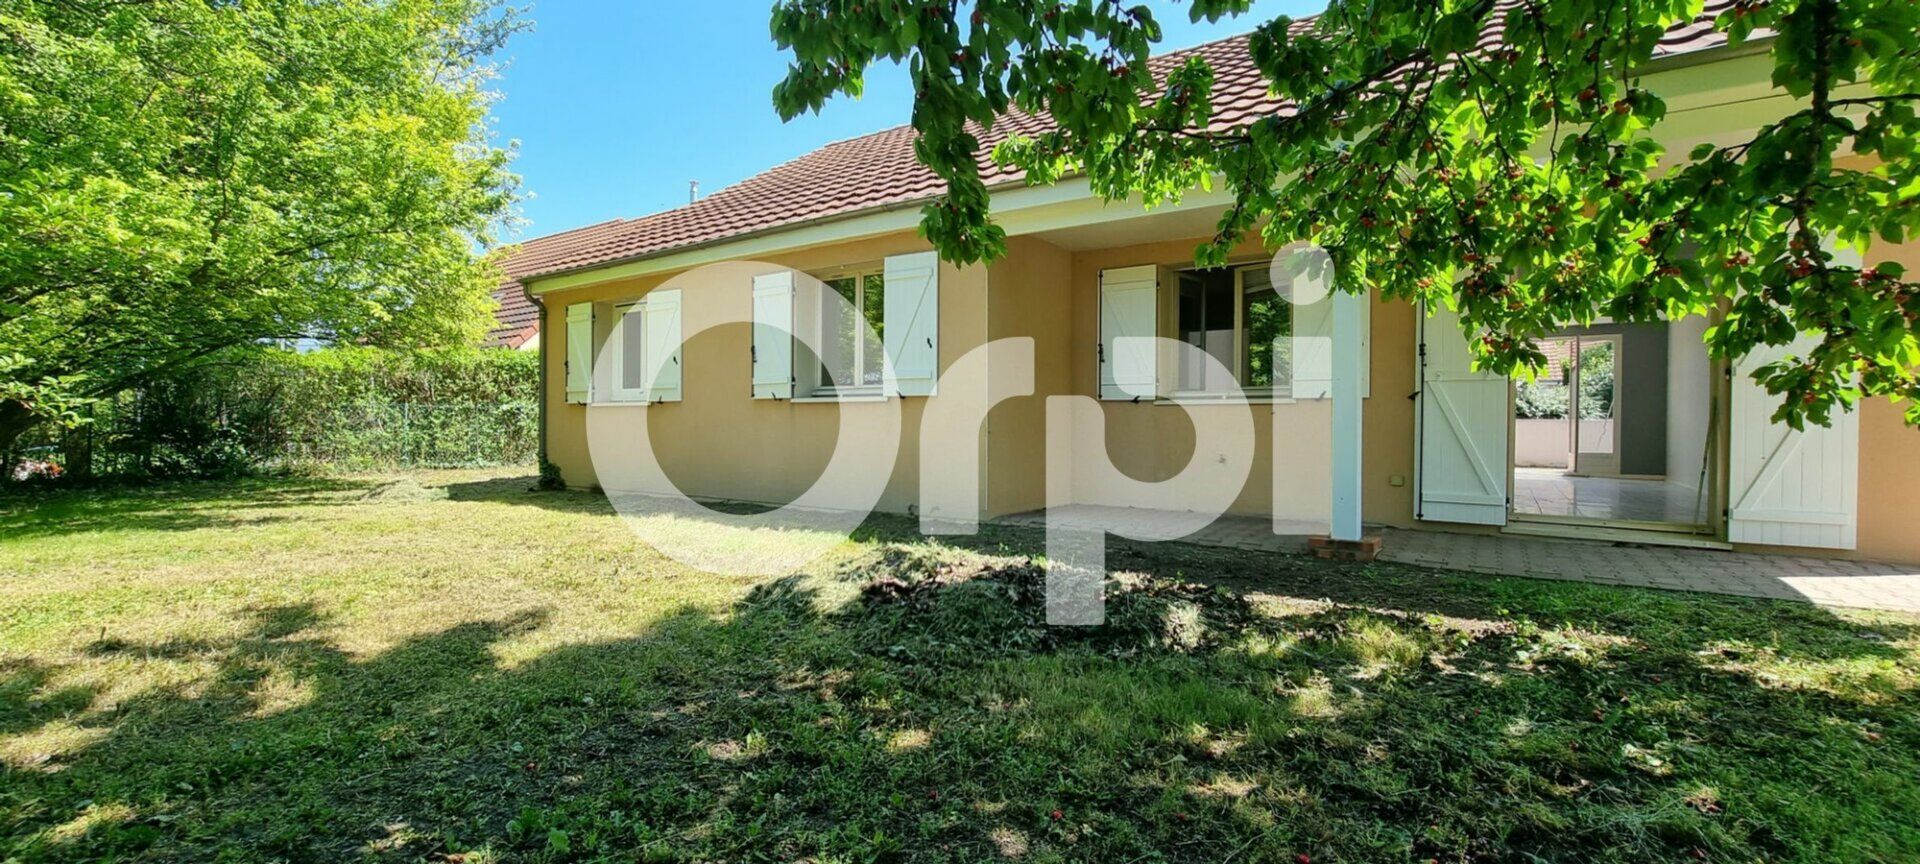 Maison à vendre 5 115m2 à Pérignat-lès-Sarliève vignette-1